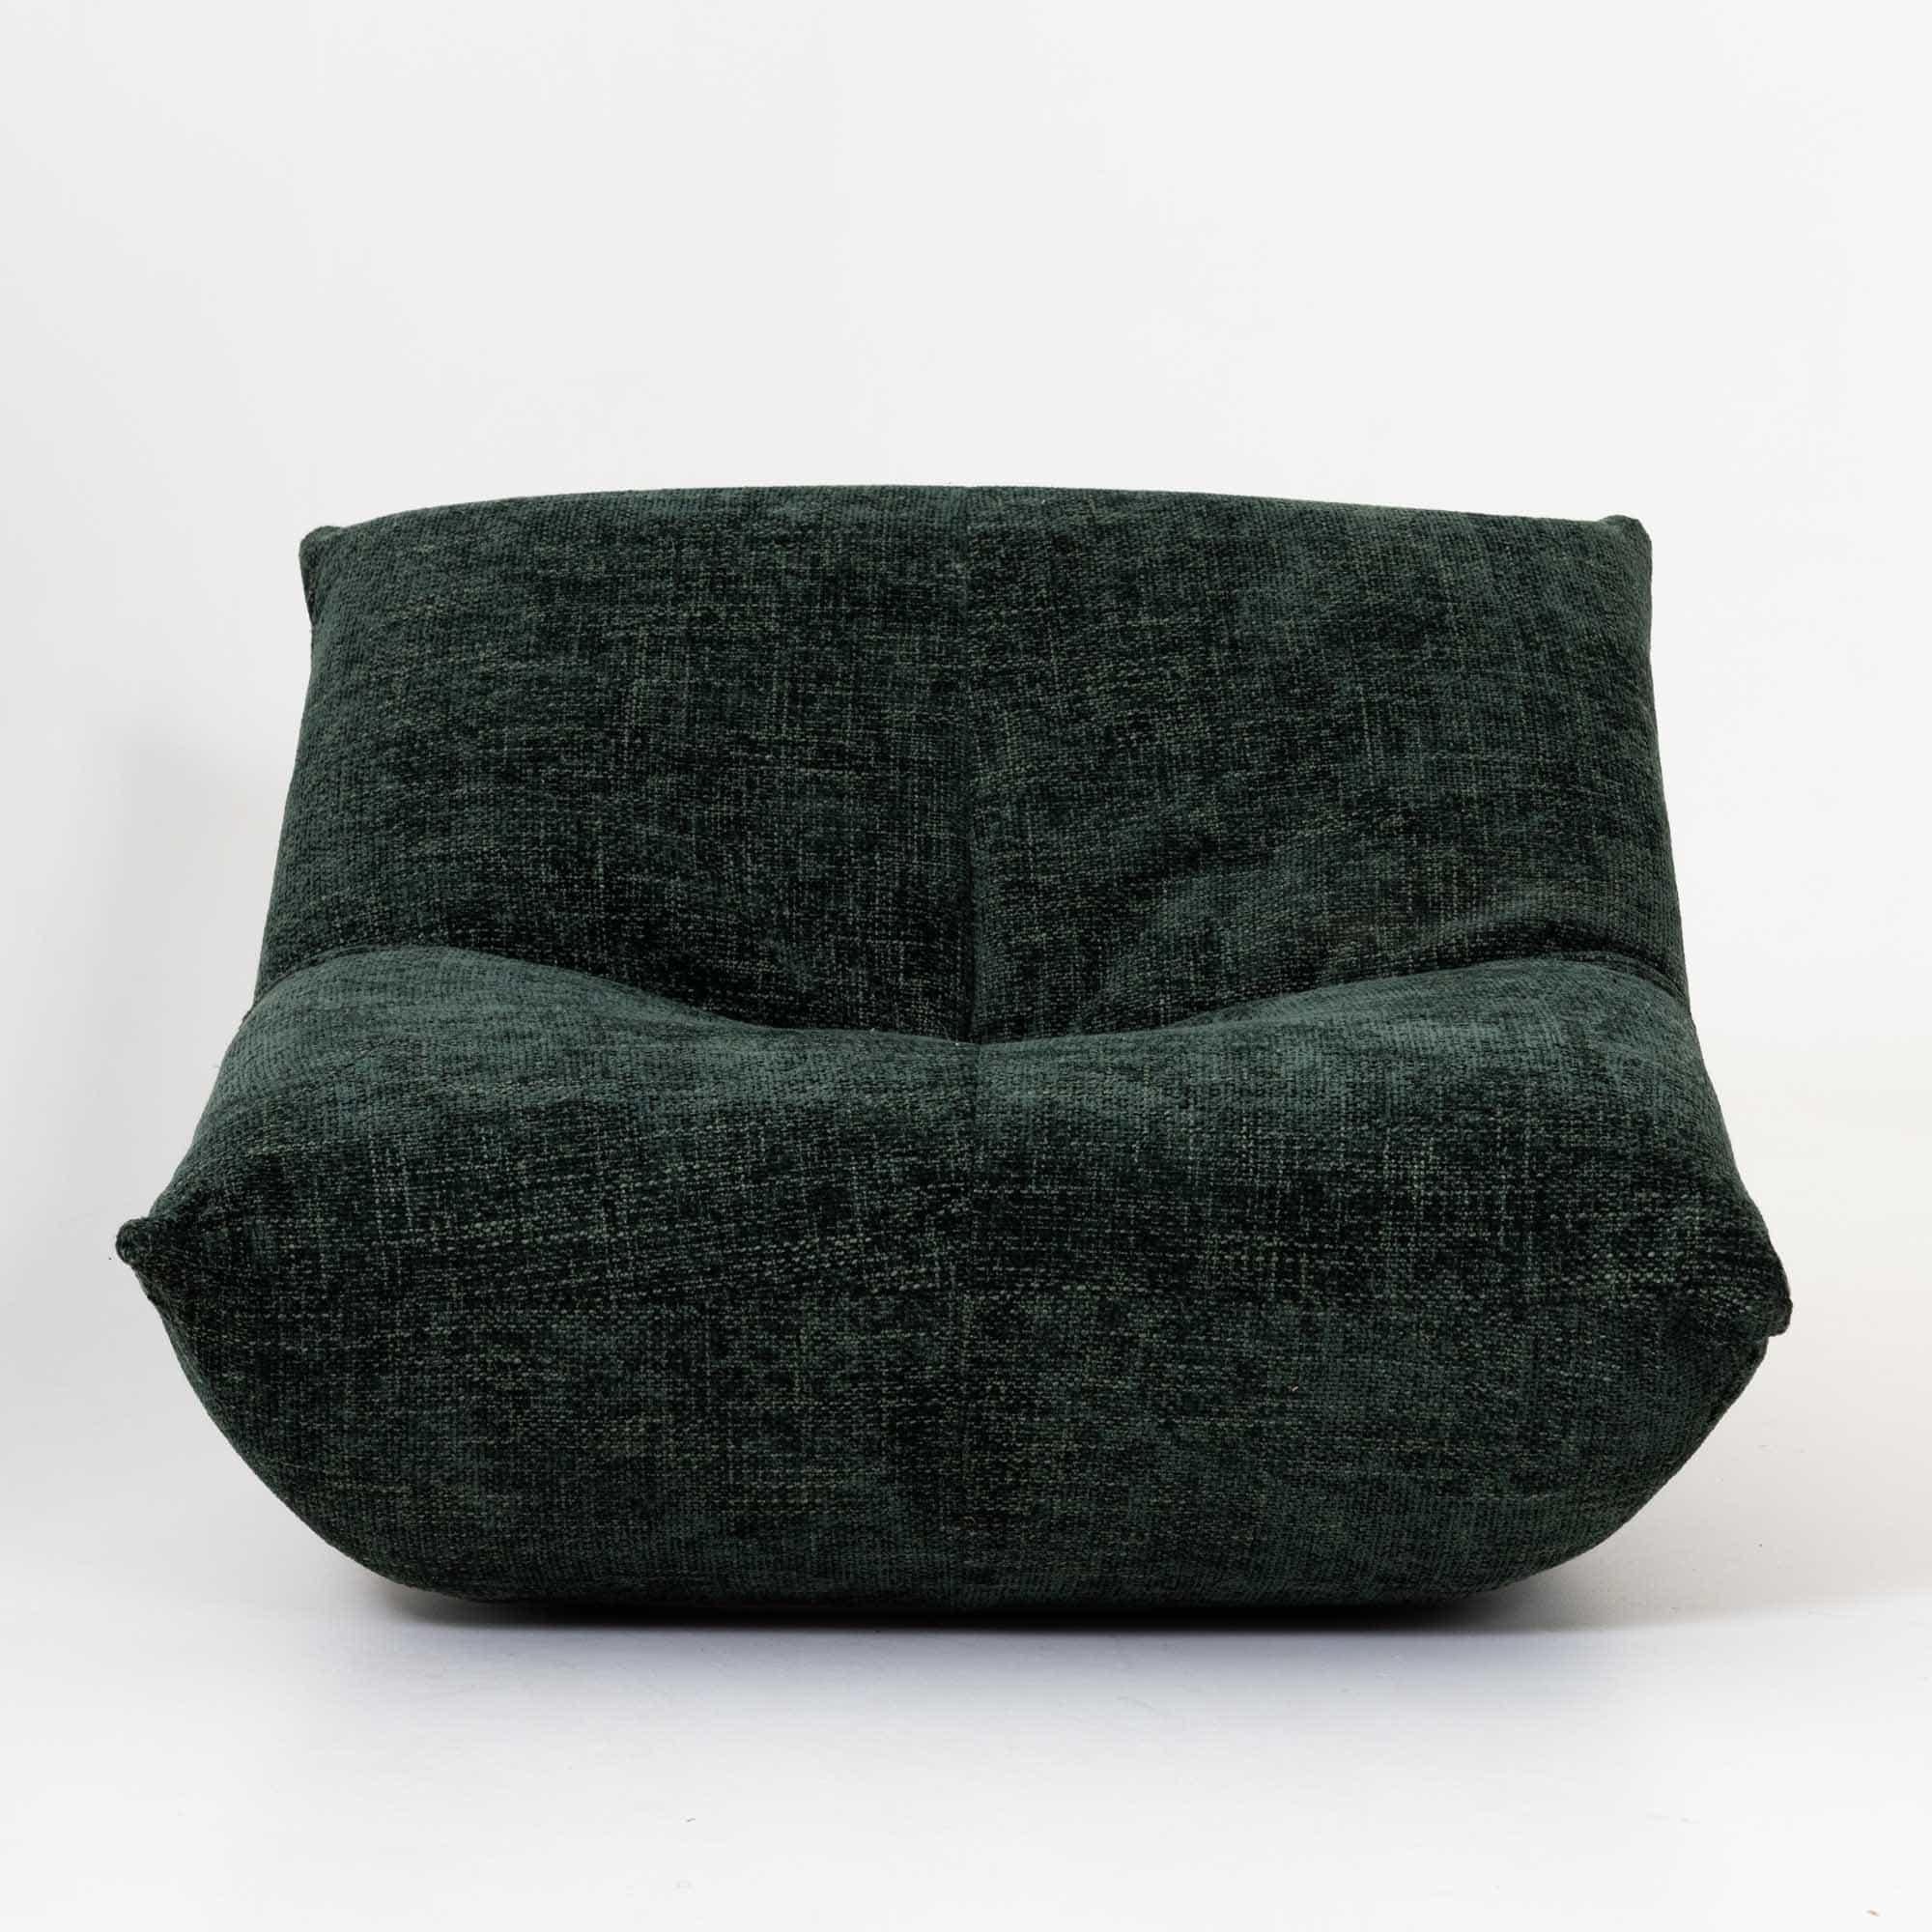 Pair of dark green upholstered 